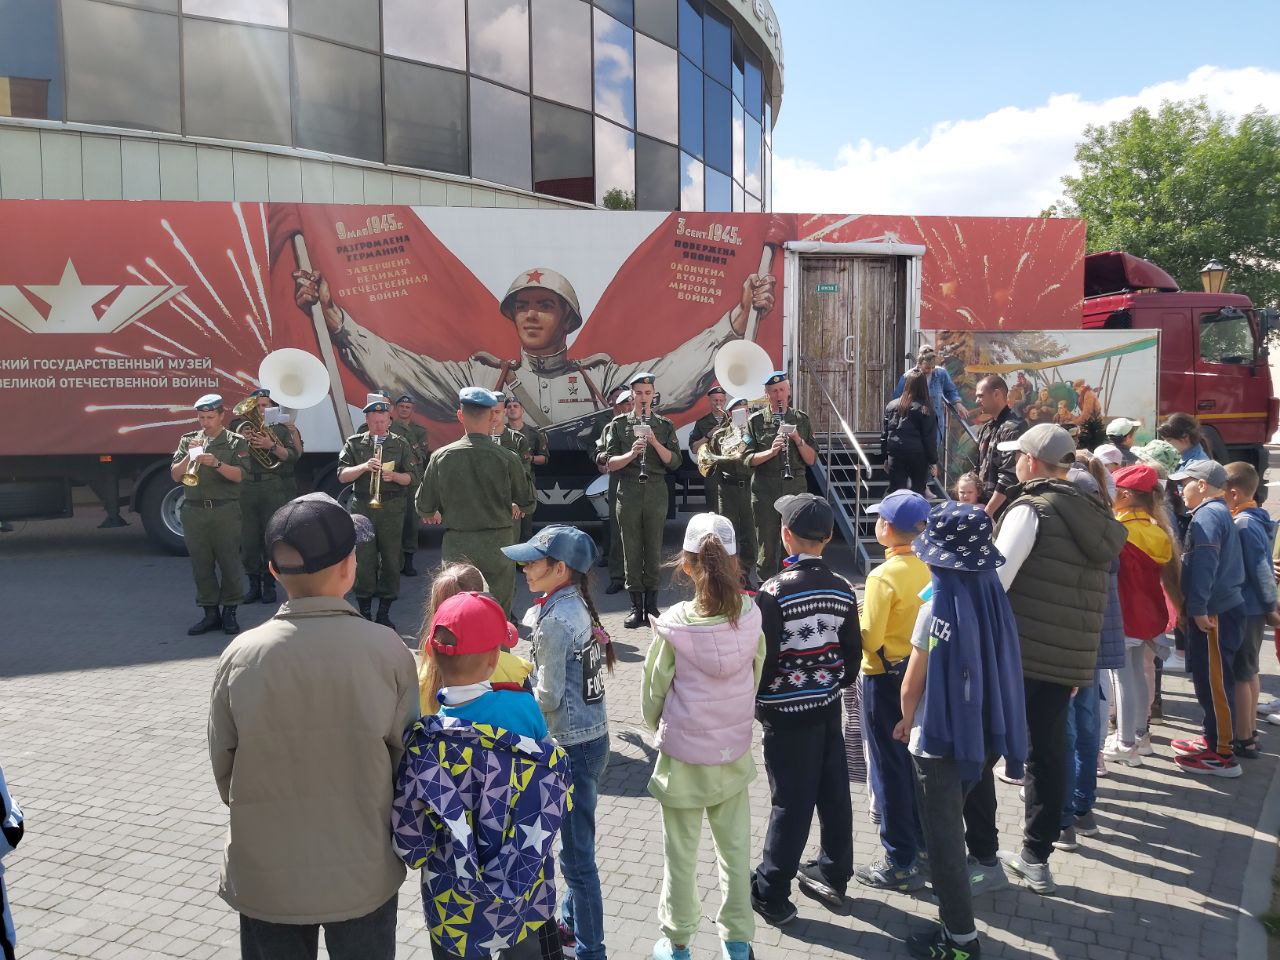 21-22 июня мобильная экспозиция работает в Бресте